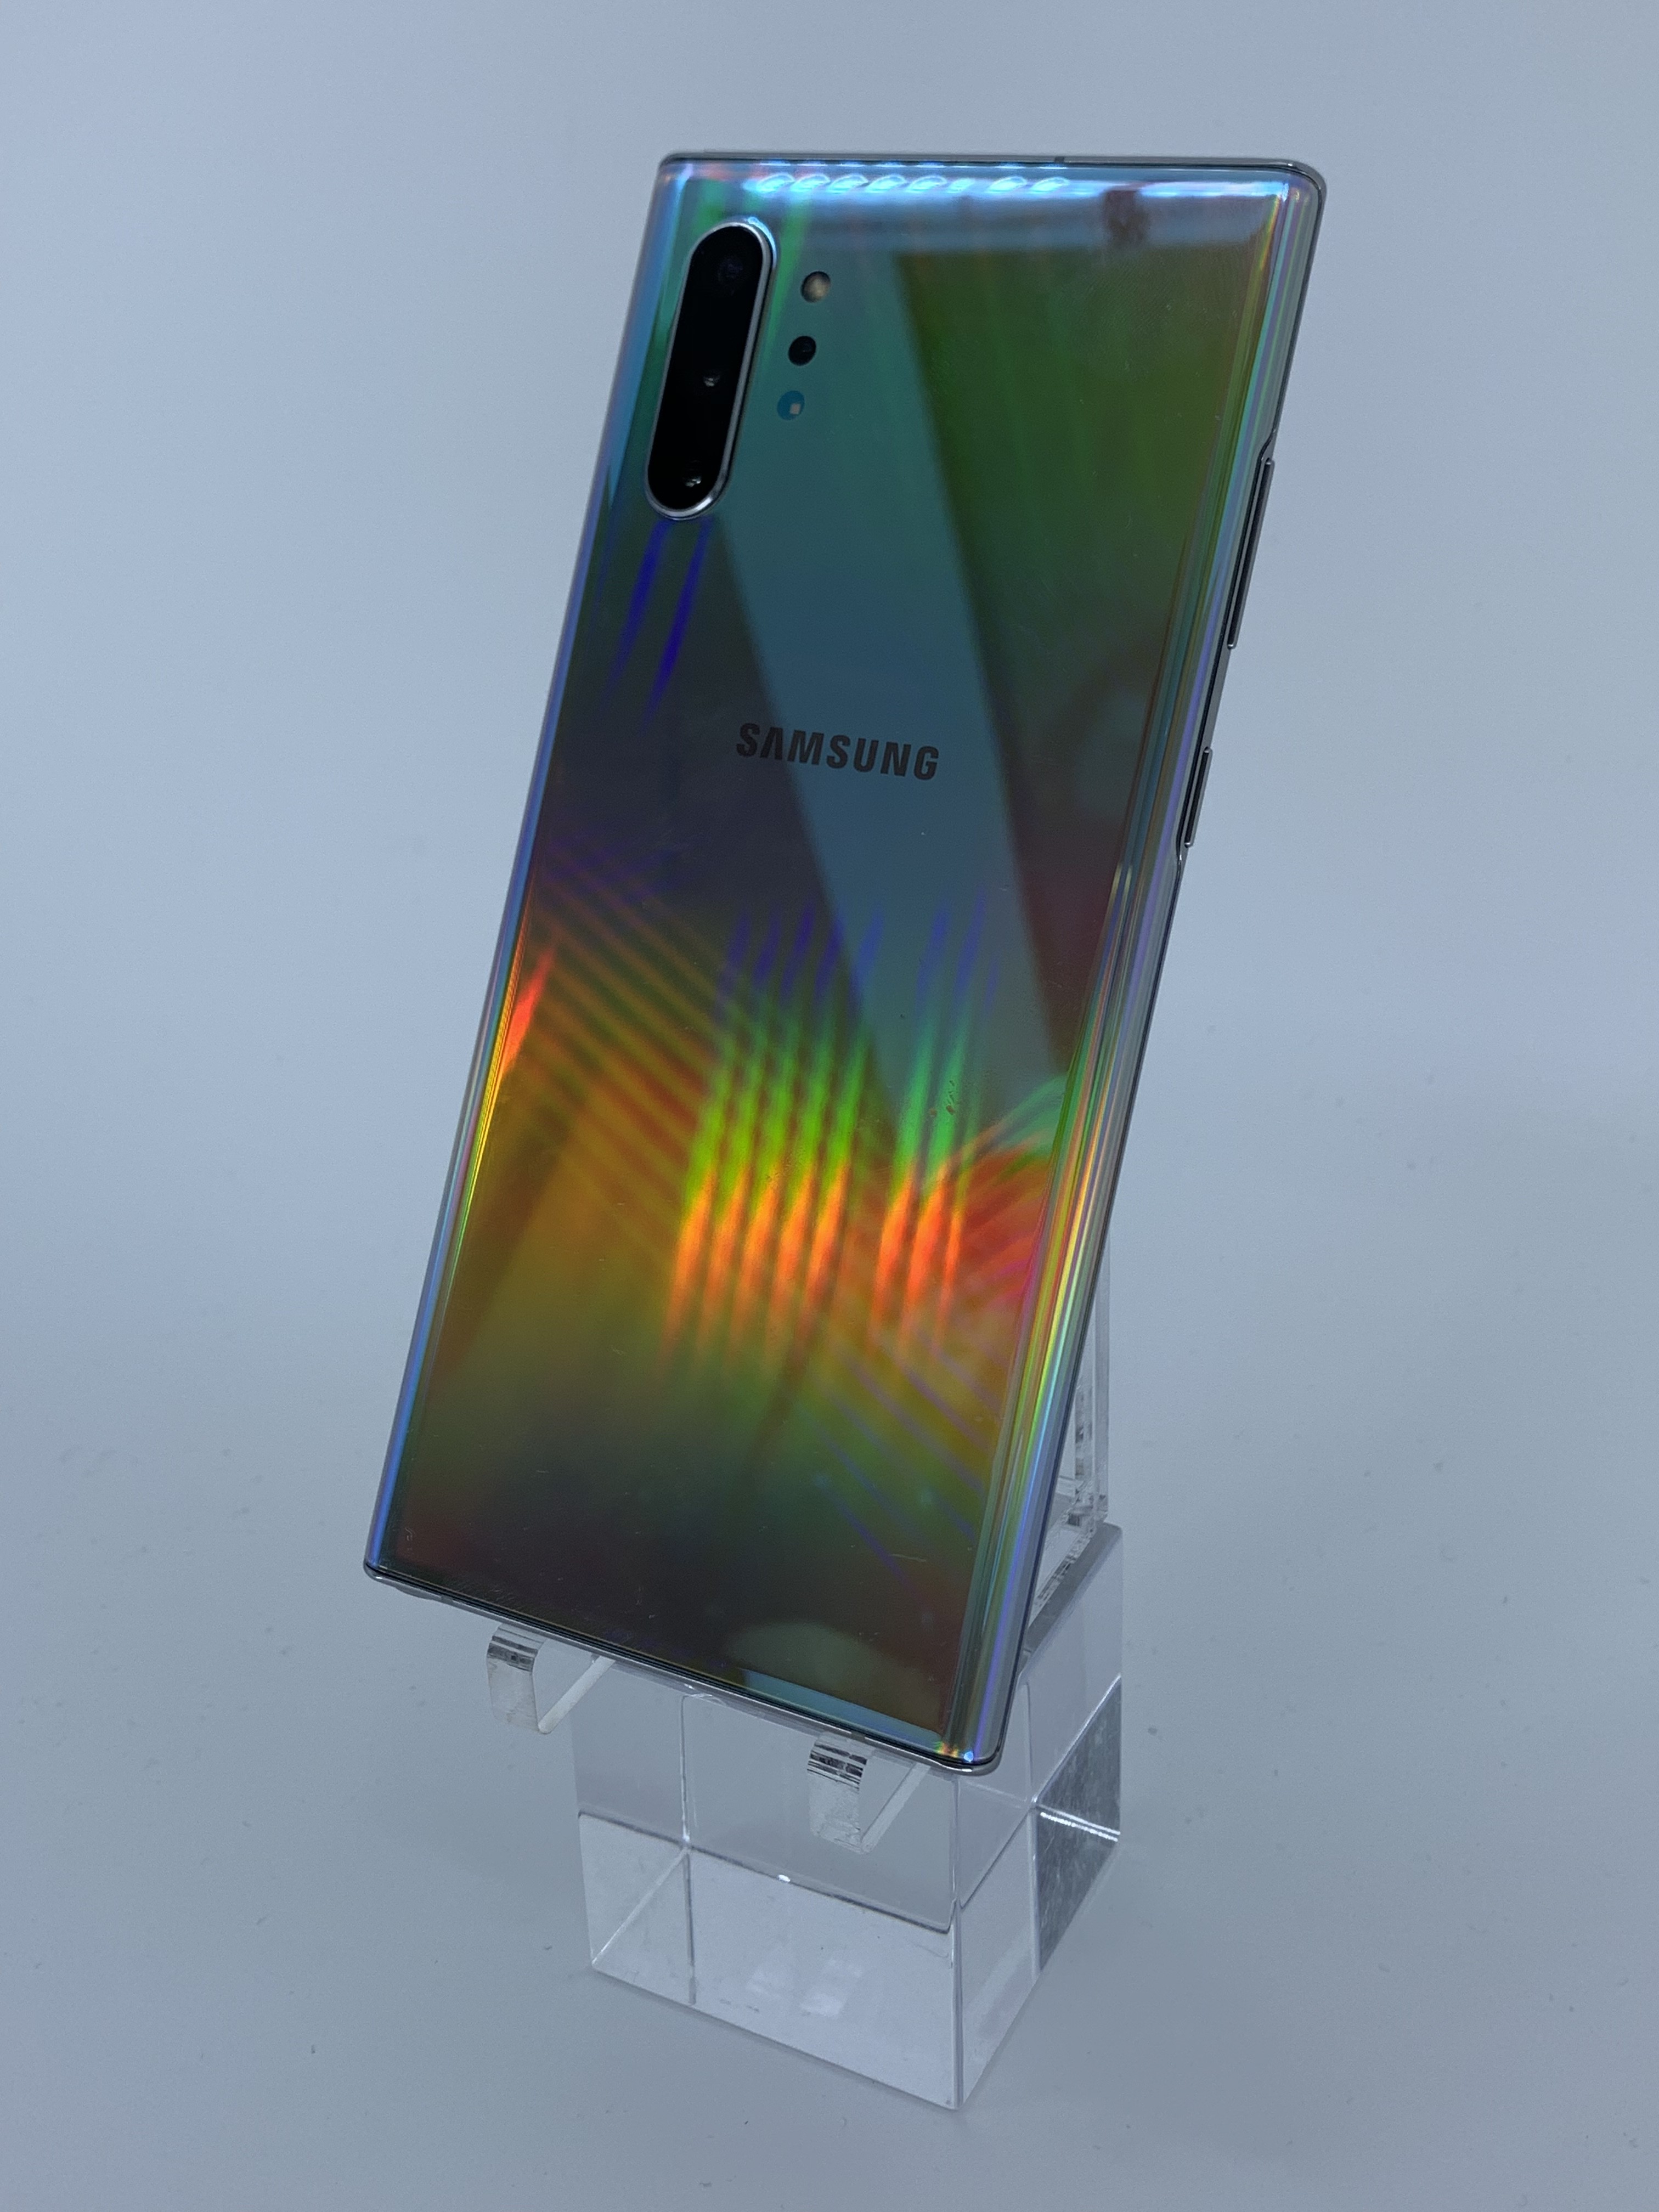 O novo Galaxy Note 10 na versão aura glow (Foto: Divulgação)